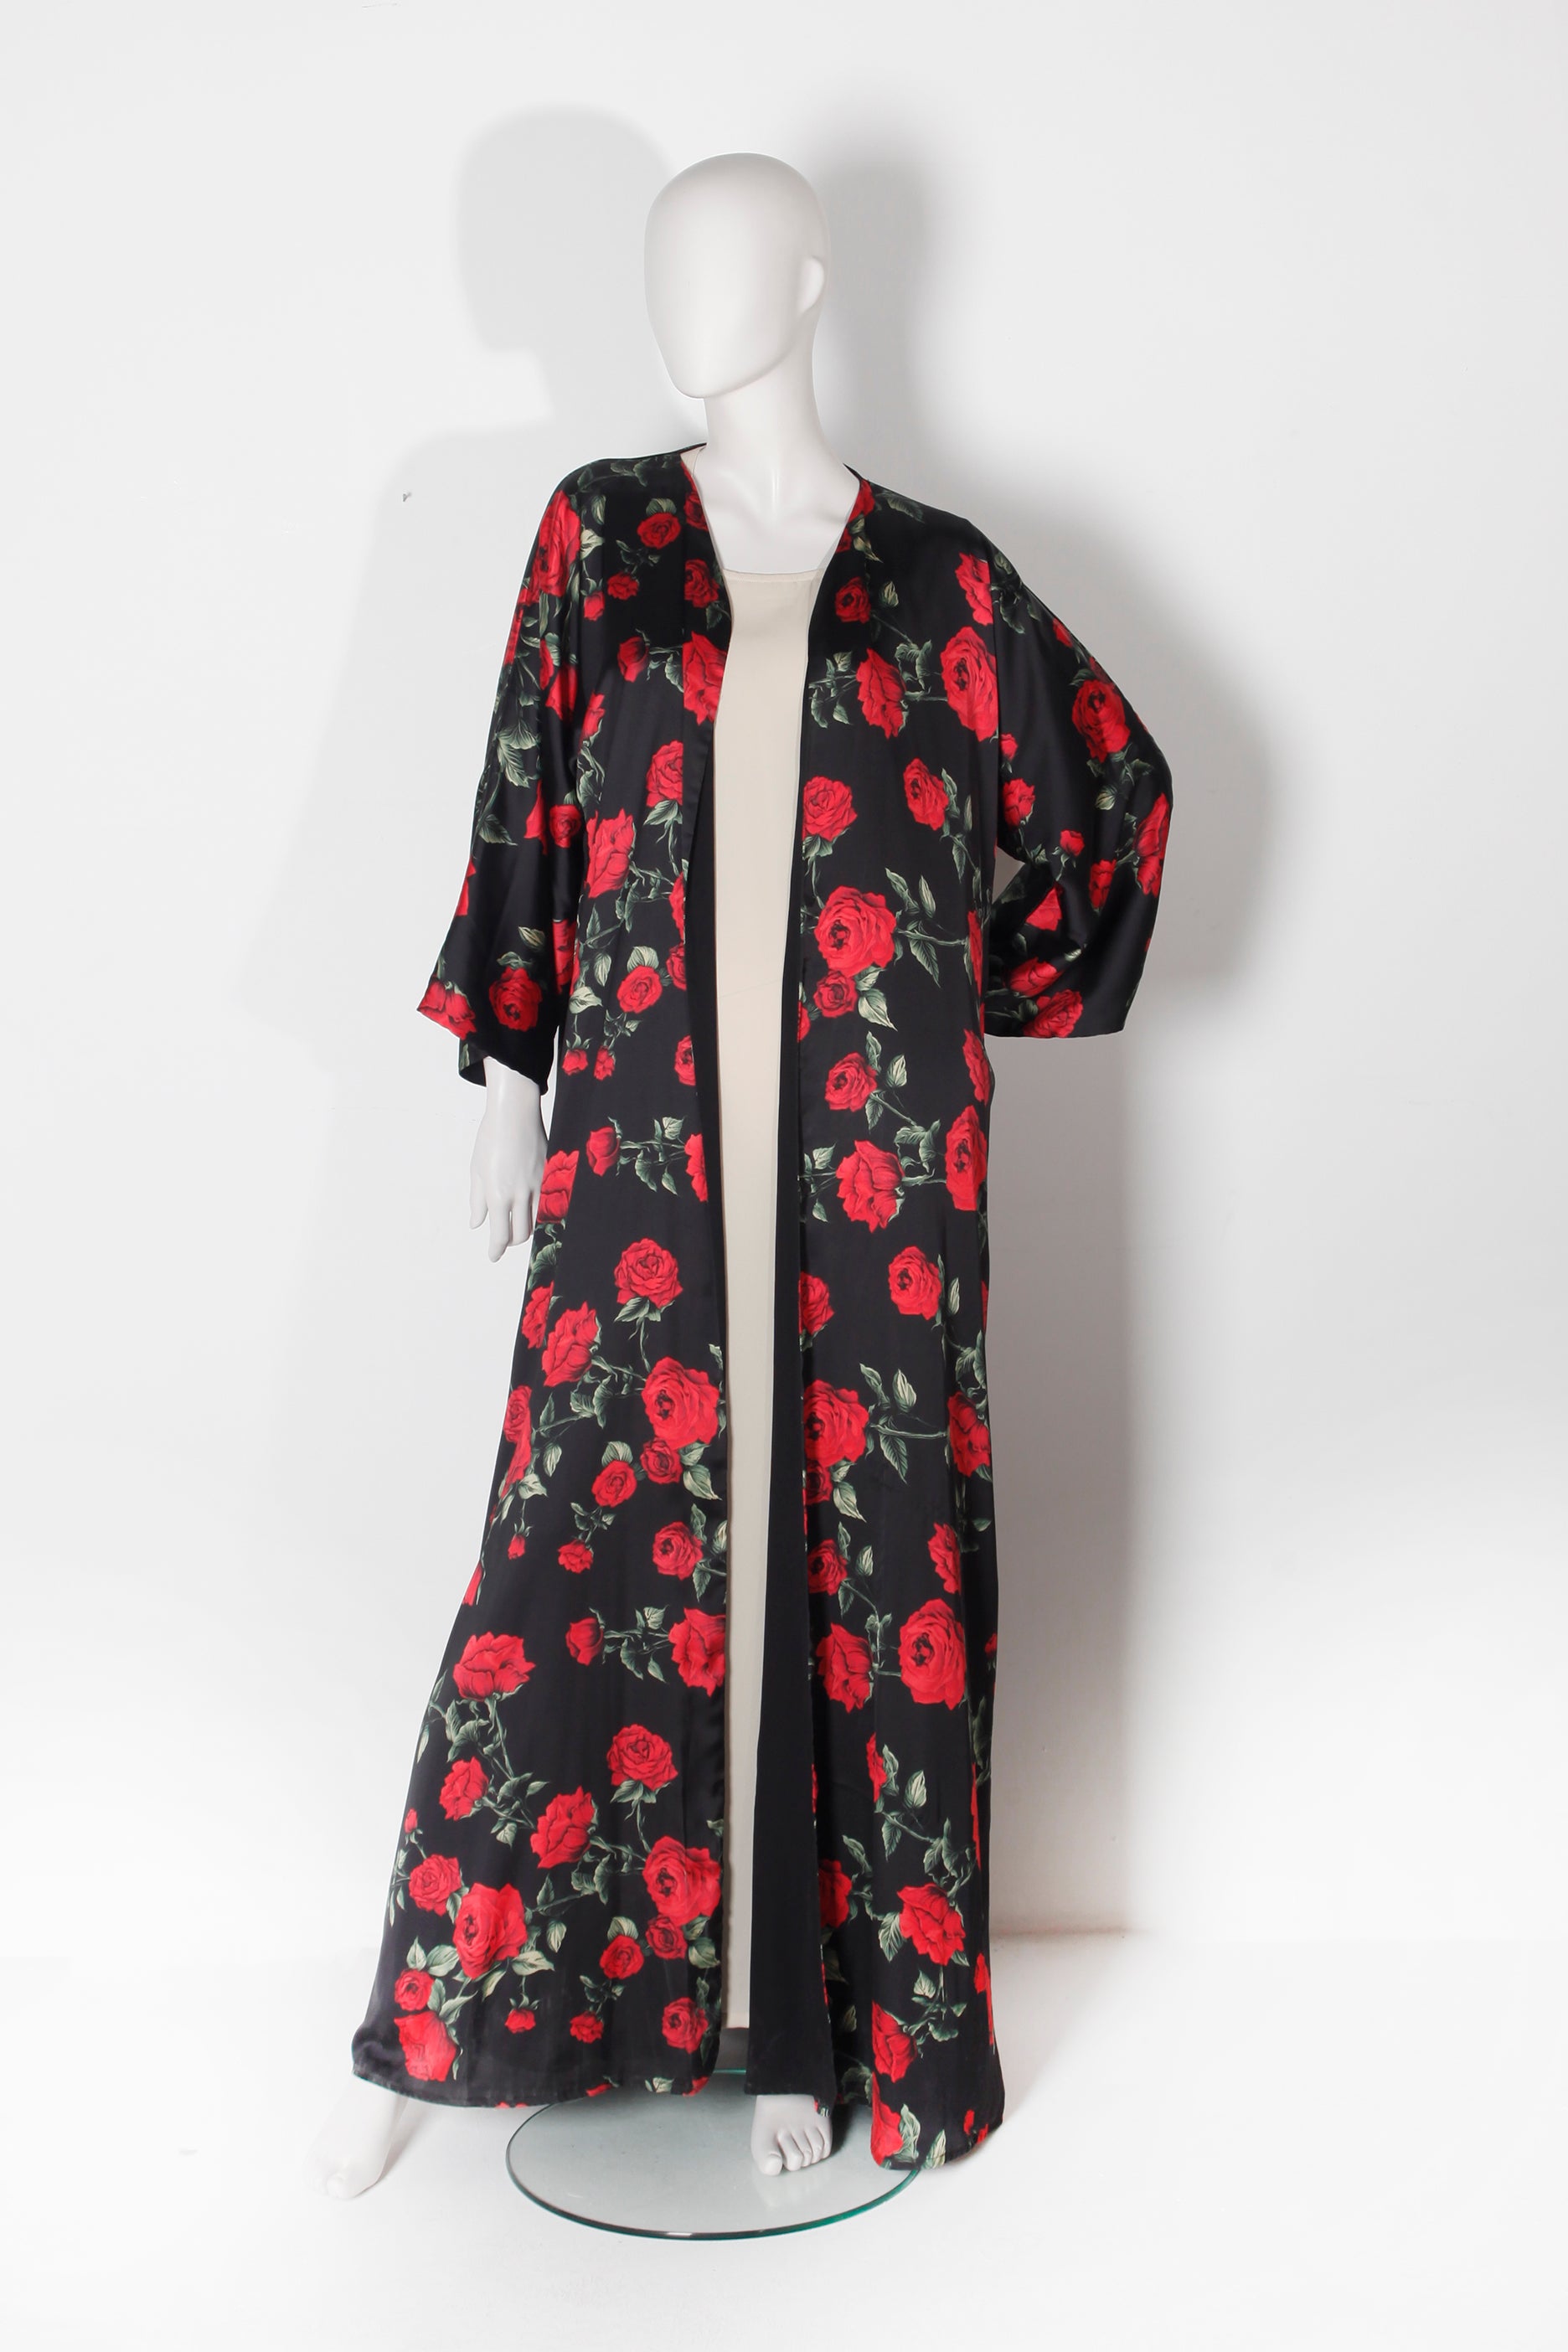 Black and red rose printed abaya